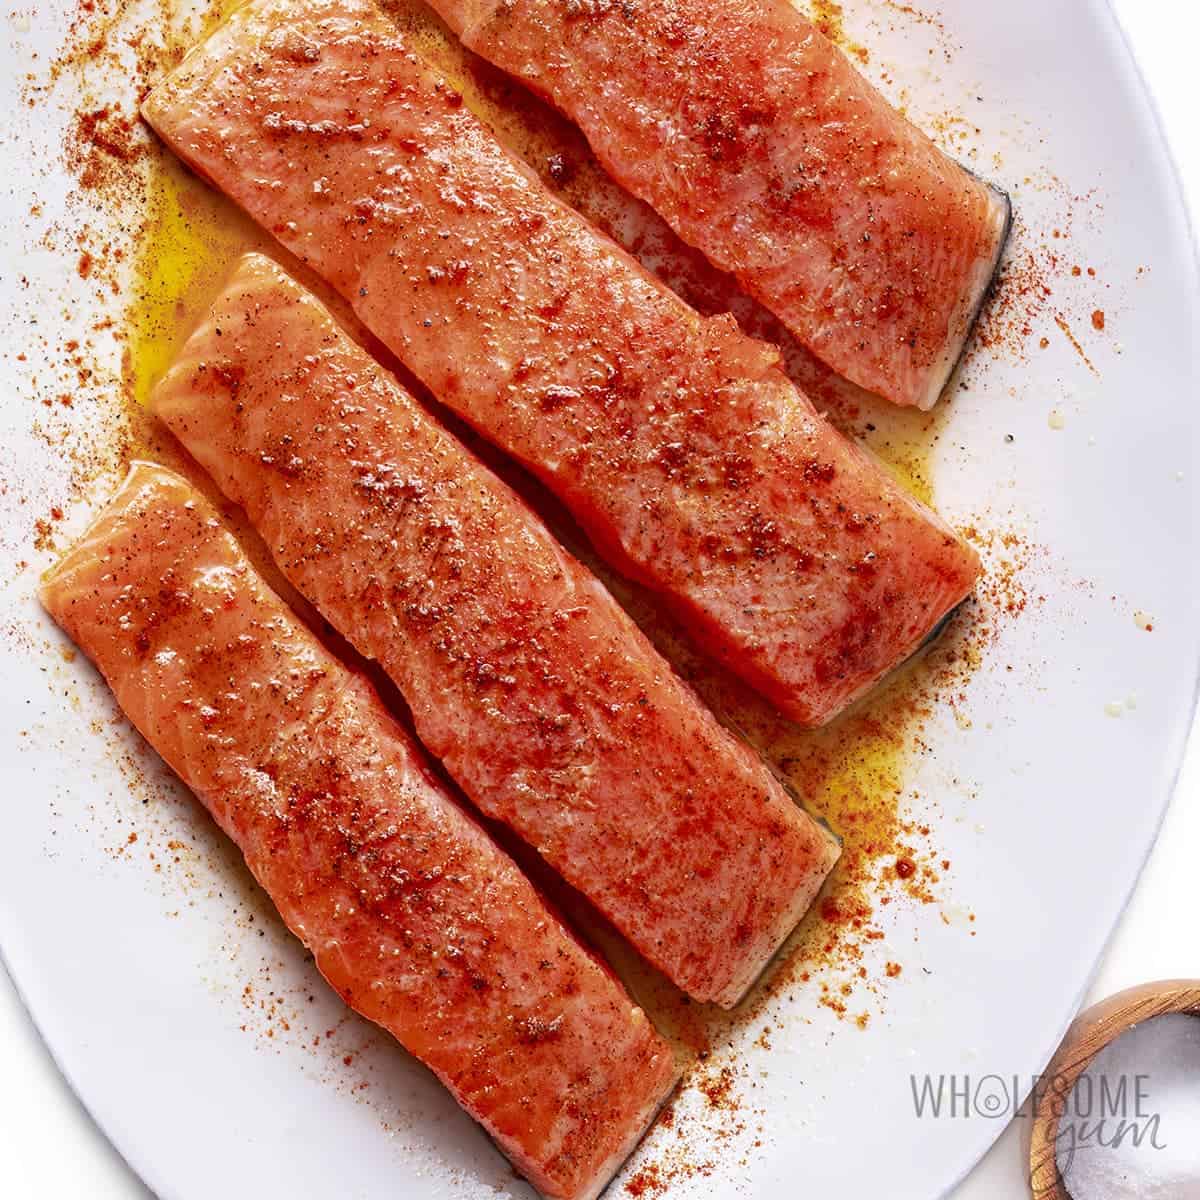 Seasoned salmon fillets